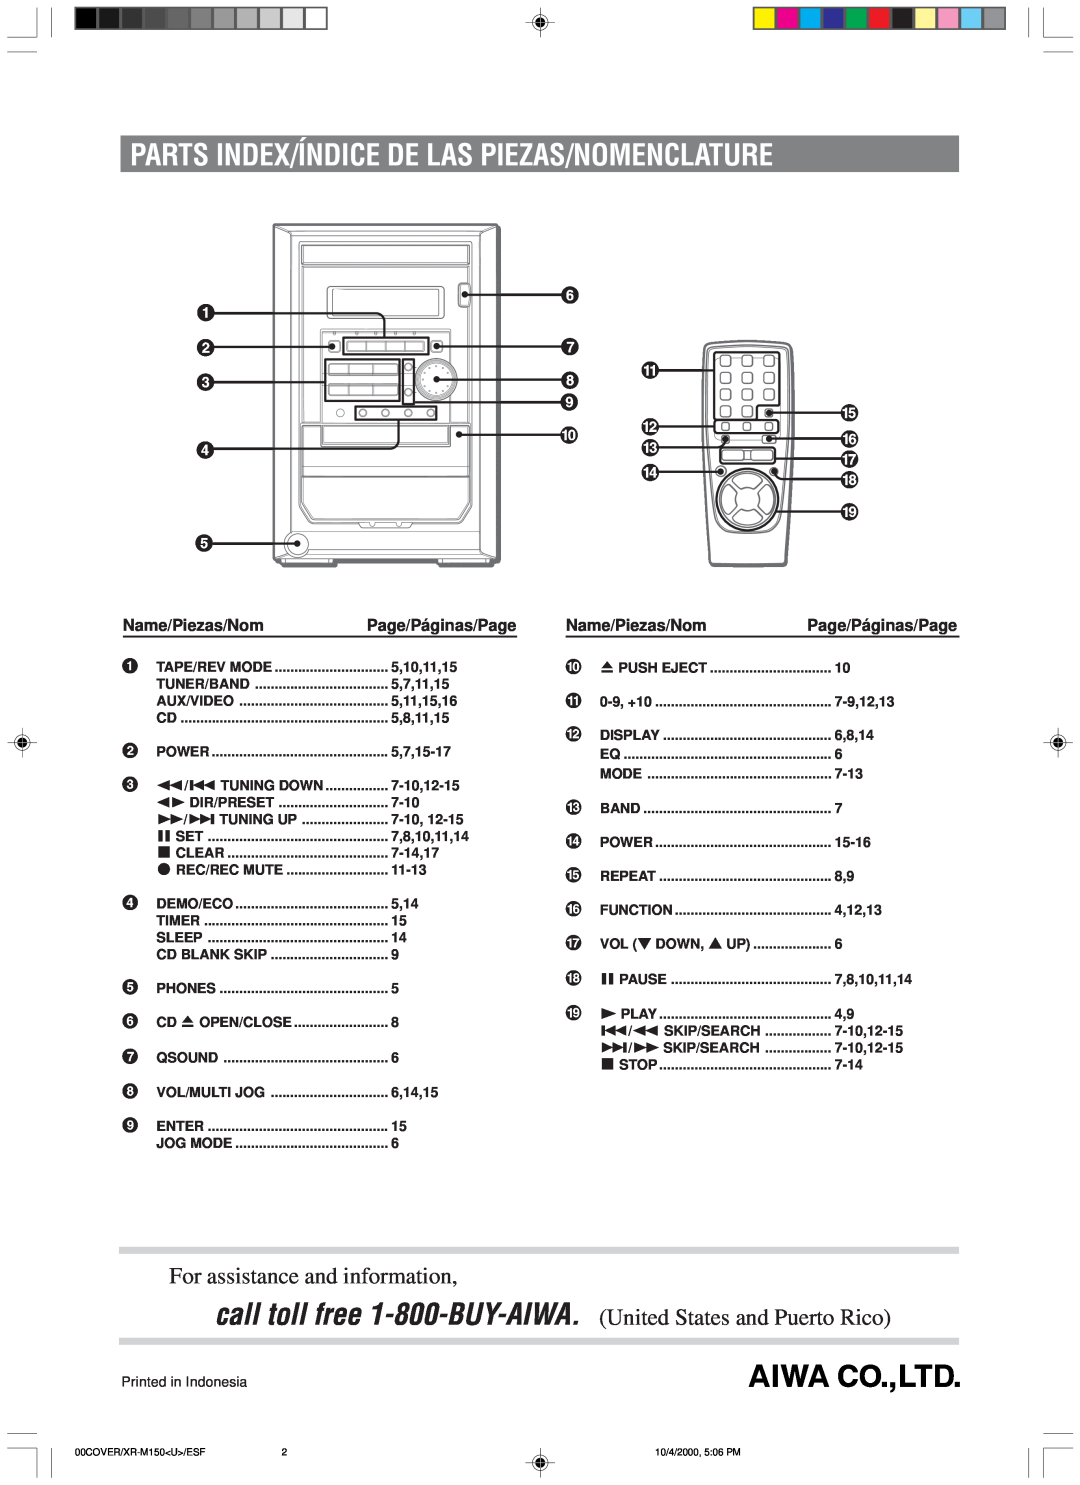 Aiwa XR-M150 manual Parts Index/Índice De Las Piezas/Nomenclature, For assistance and information 